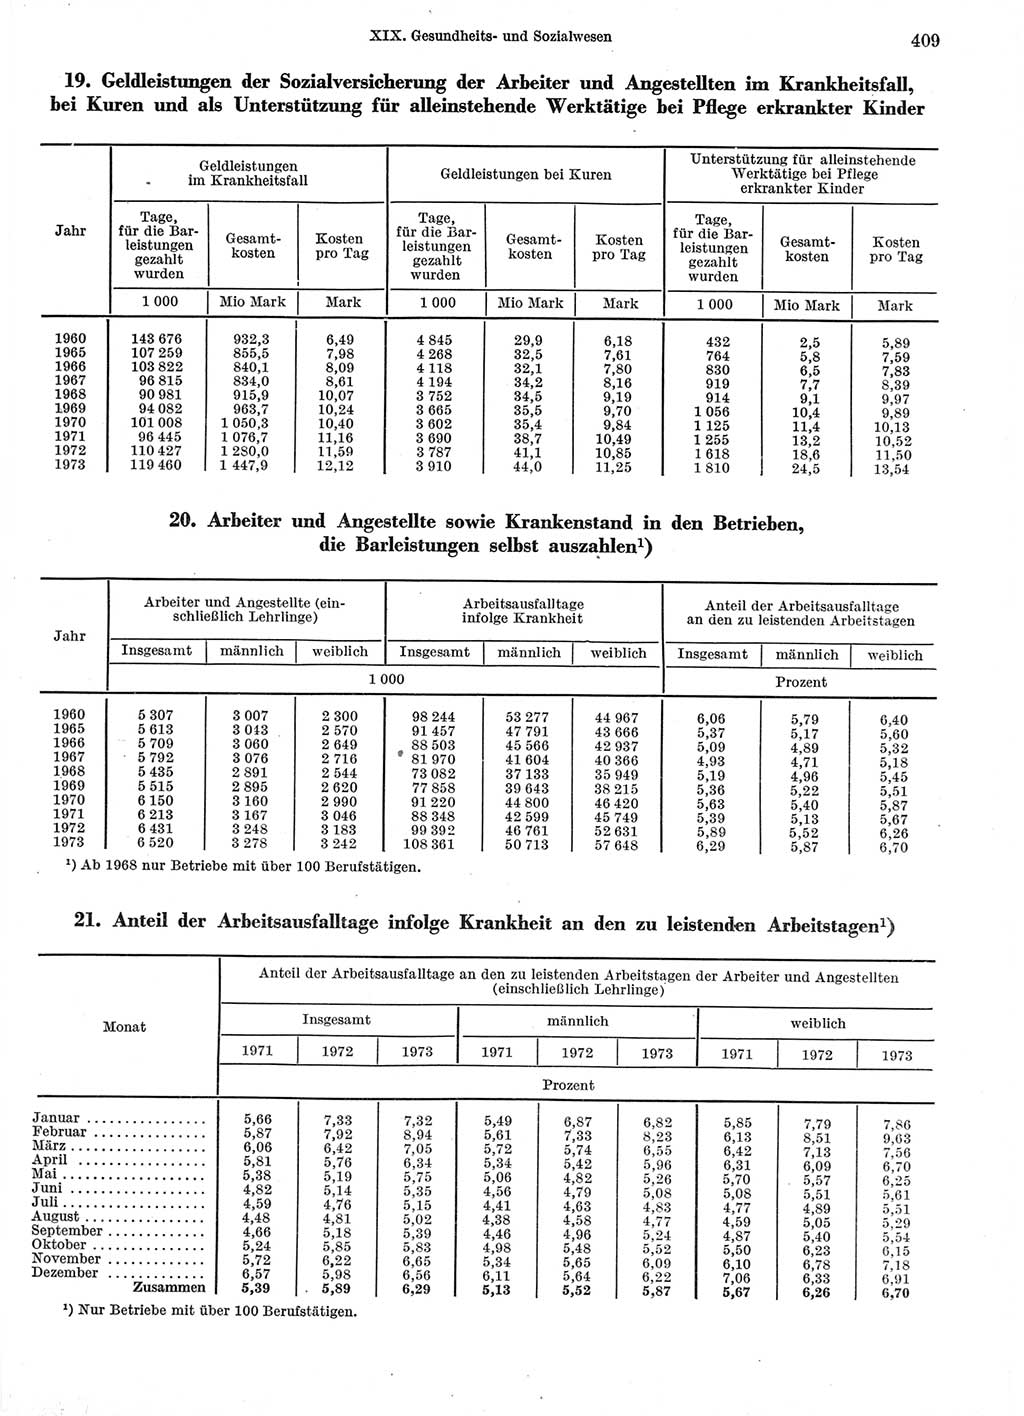 Statistisches Jahrbuch der Deutschen Demokratischen Republik (DDR) 1974, Seite 409 (Stat. Jb. DDR 1974, S. 409)